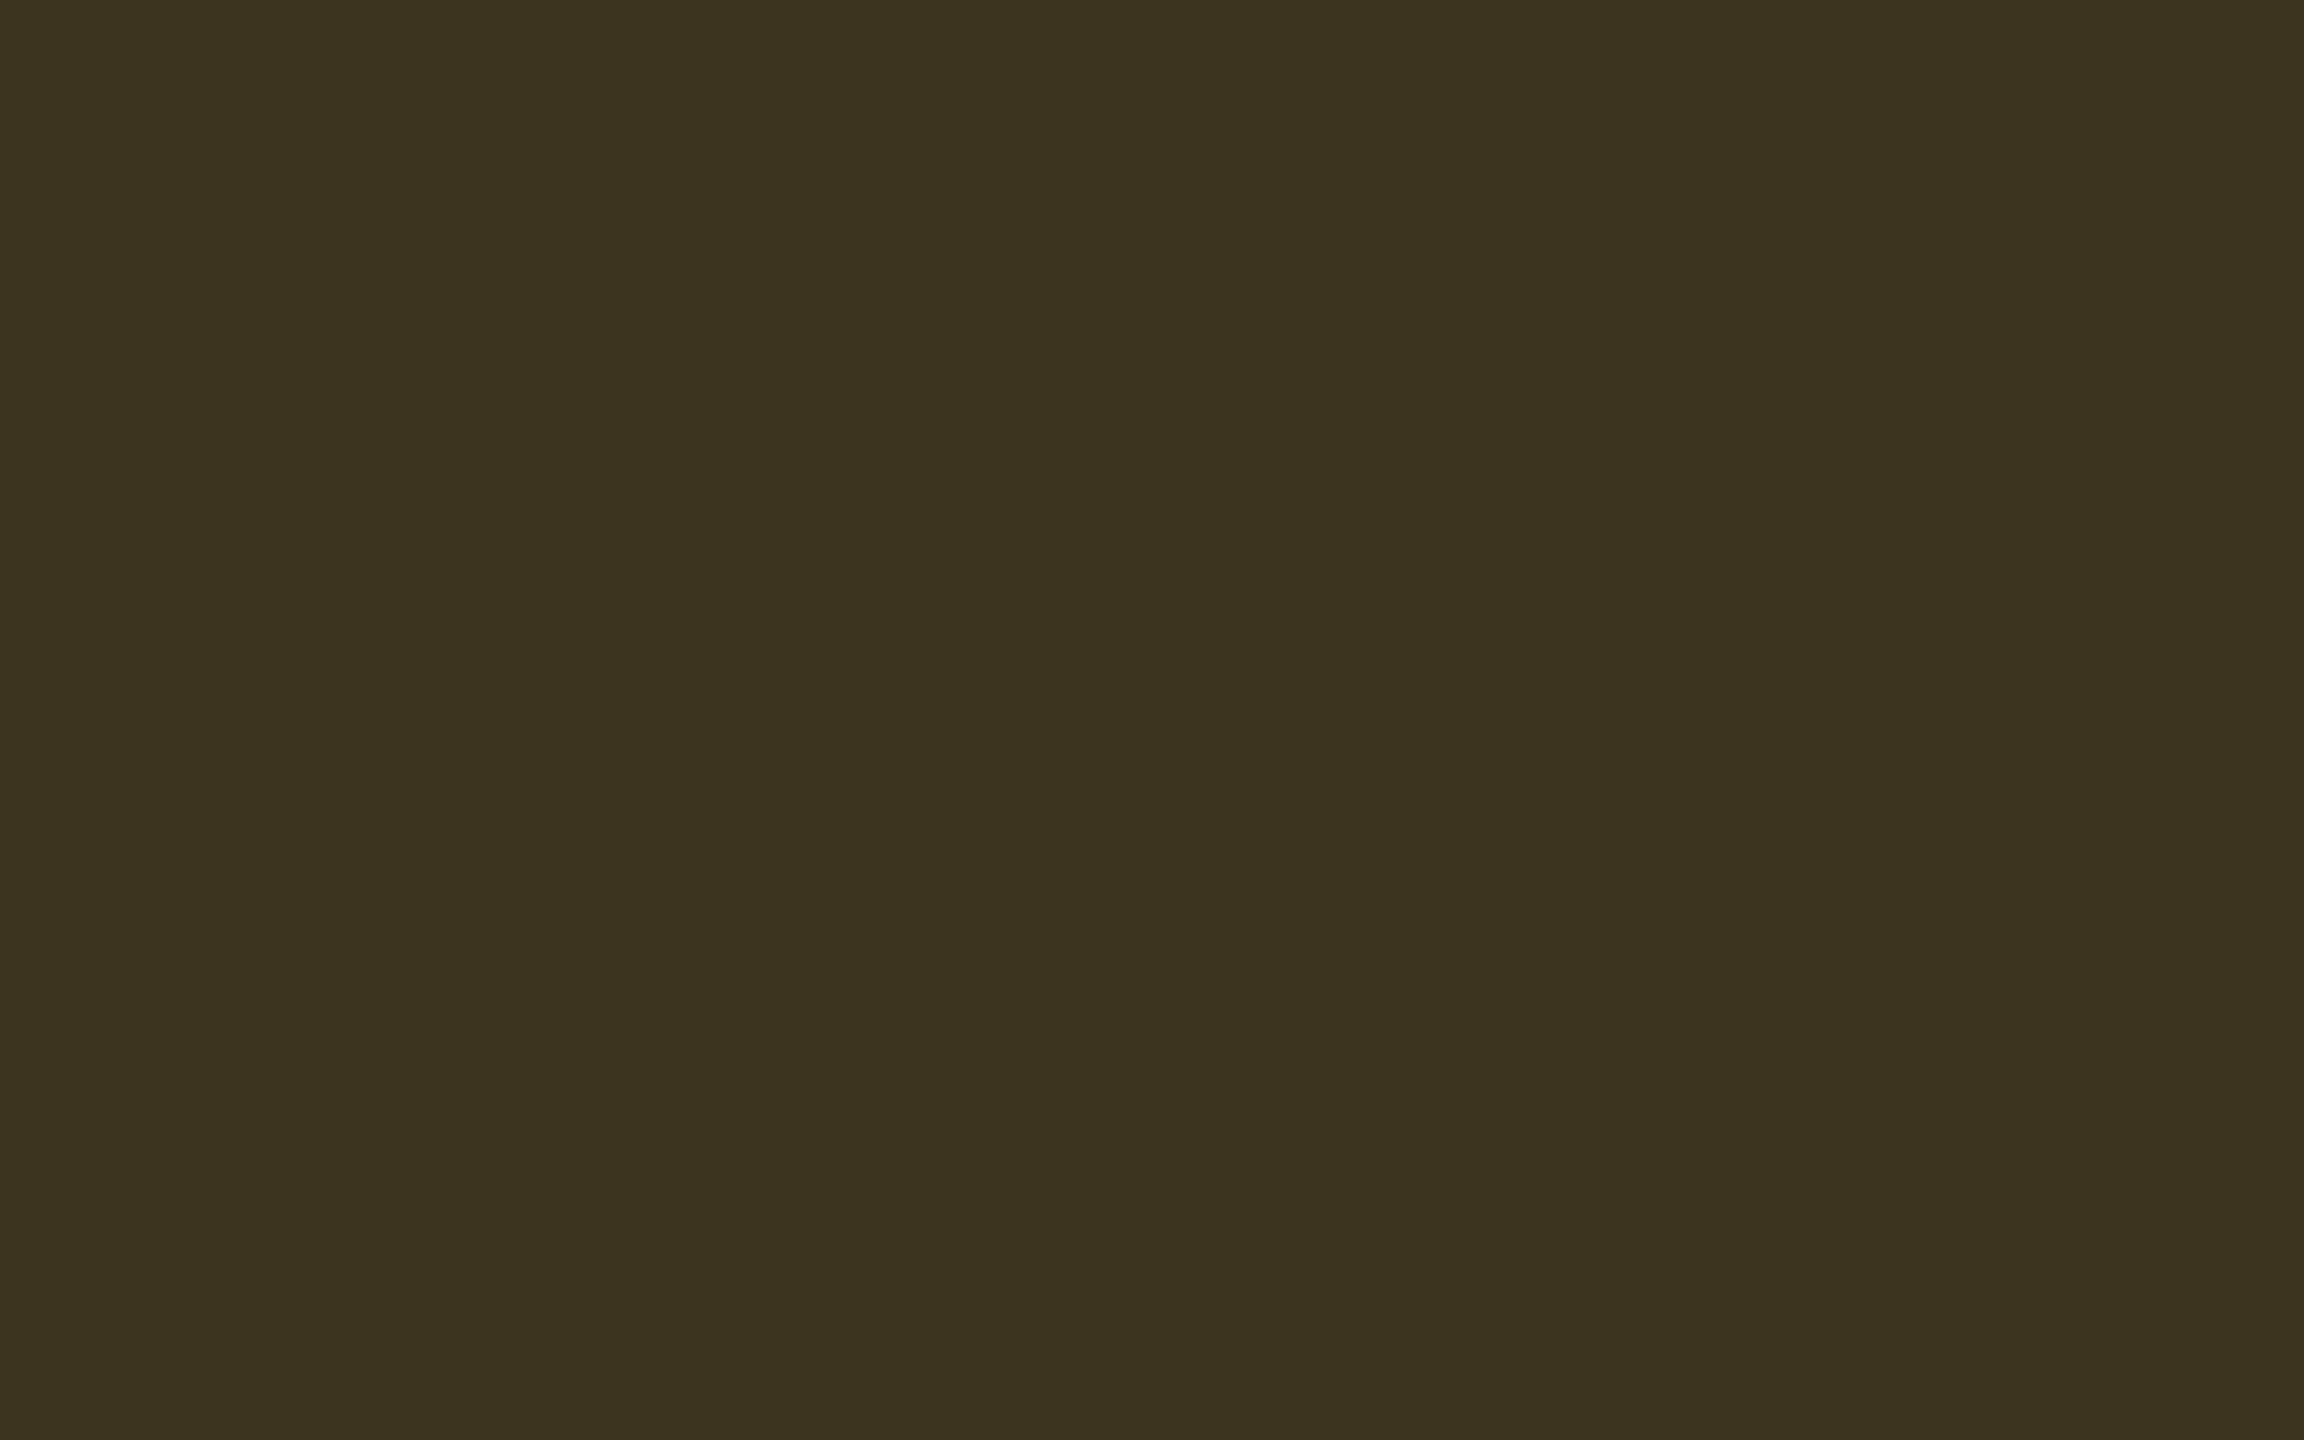 2304x1440 Olive Drab Number Seven Solid Color Background